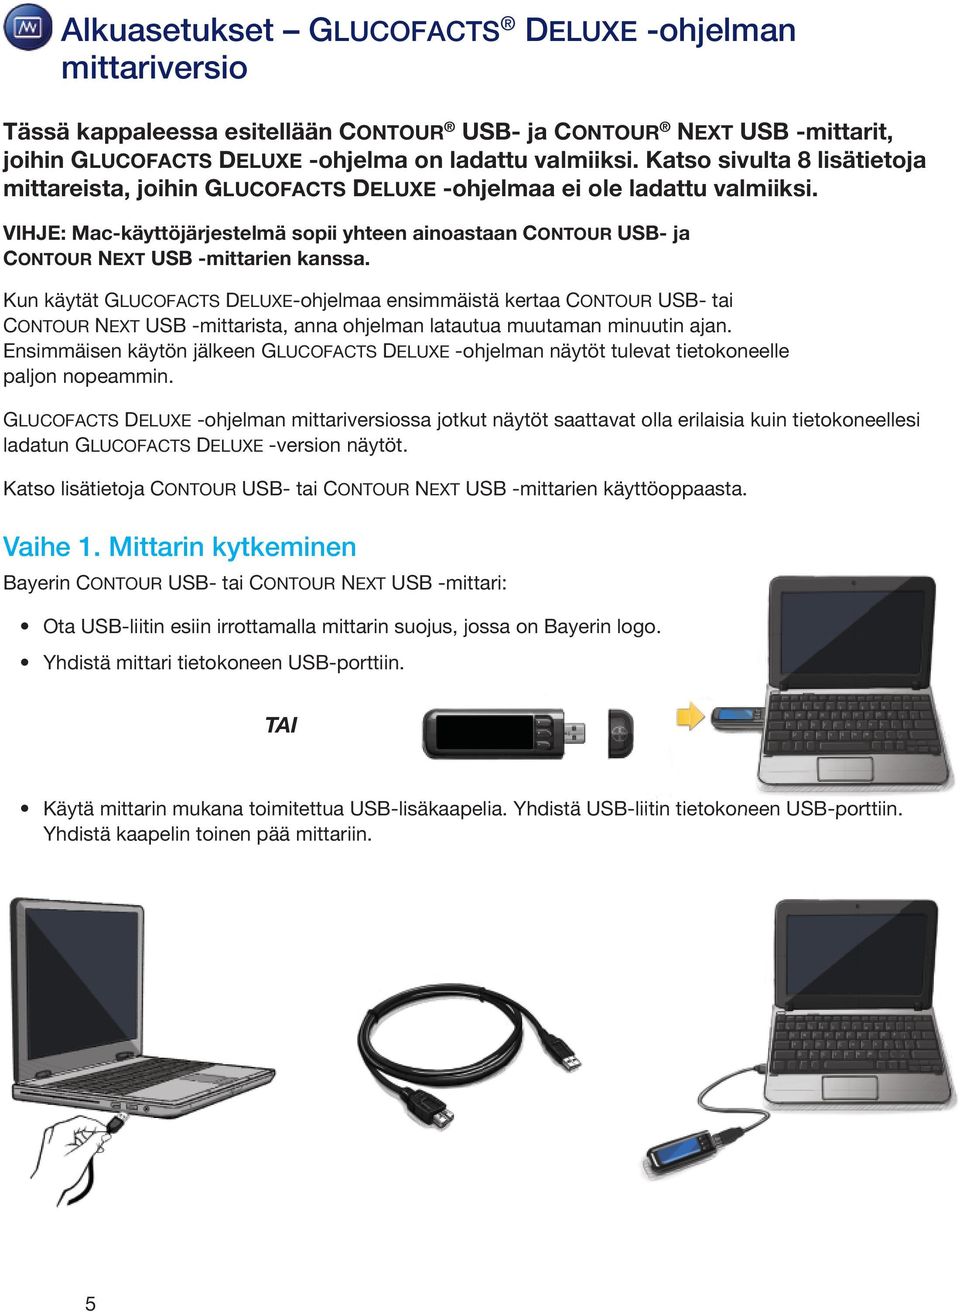 VIHJE: Mac-käyttöjärjestelmä sopii yhteen ainoastaan CONTOUR USB- ja CONTOUR NEXT USB -mittarien kanssa.